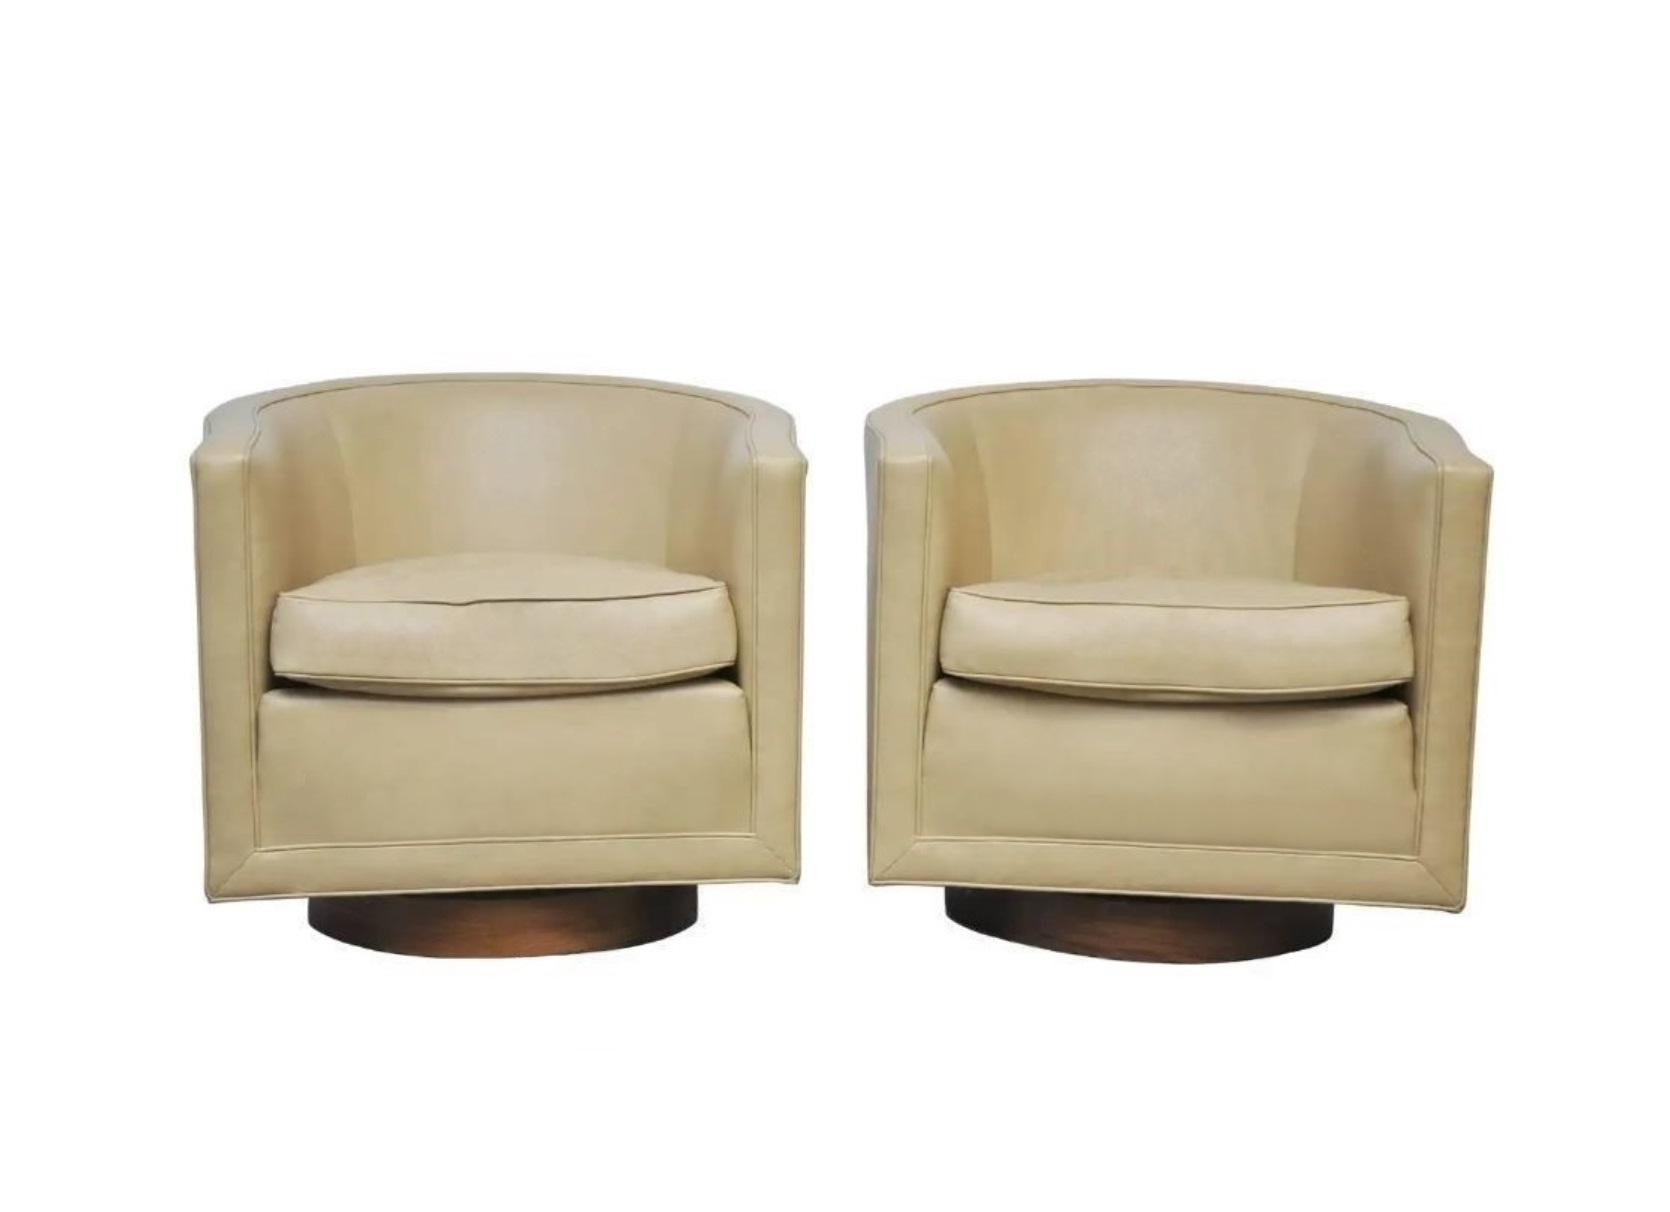 Ajoutez un peu d'élégance ludique à votre espace avec ces chaises Dunbar pivotantes conçues par Edward Wormley, dans les années 1960. Sa signature, définie par des lignes épurées et une simplicité architecturale, soigneusement élaborée en mettant